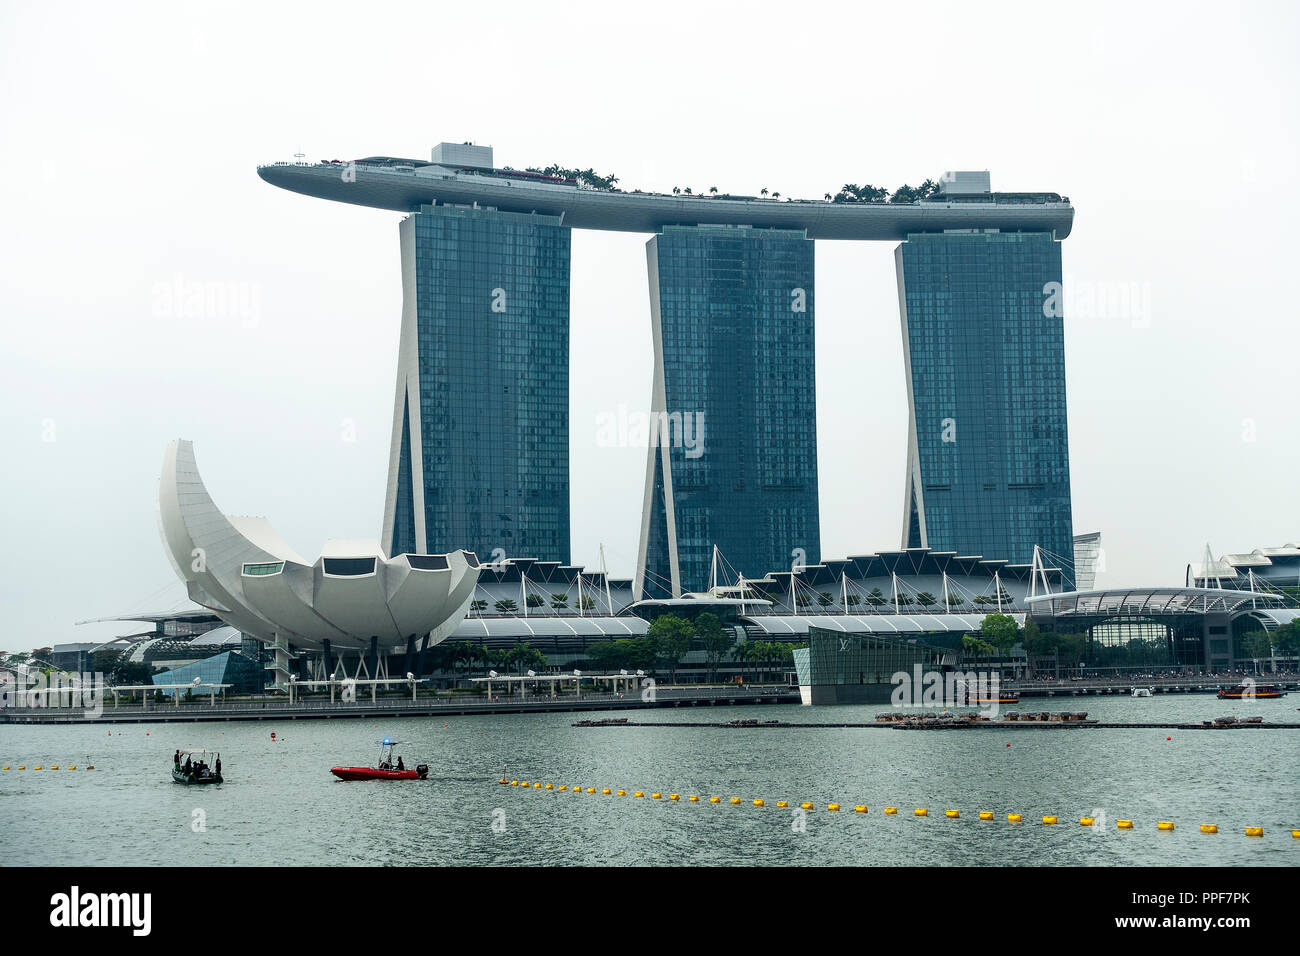 L'emblématique Hôtel Marina Bay Sands et le Musée ArtScience sur la baie au centre-ville de Singapour République de Singapour Asie Banque D'Images